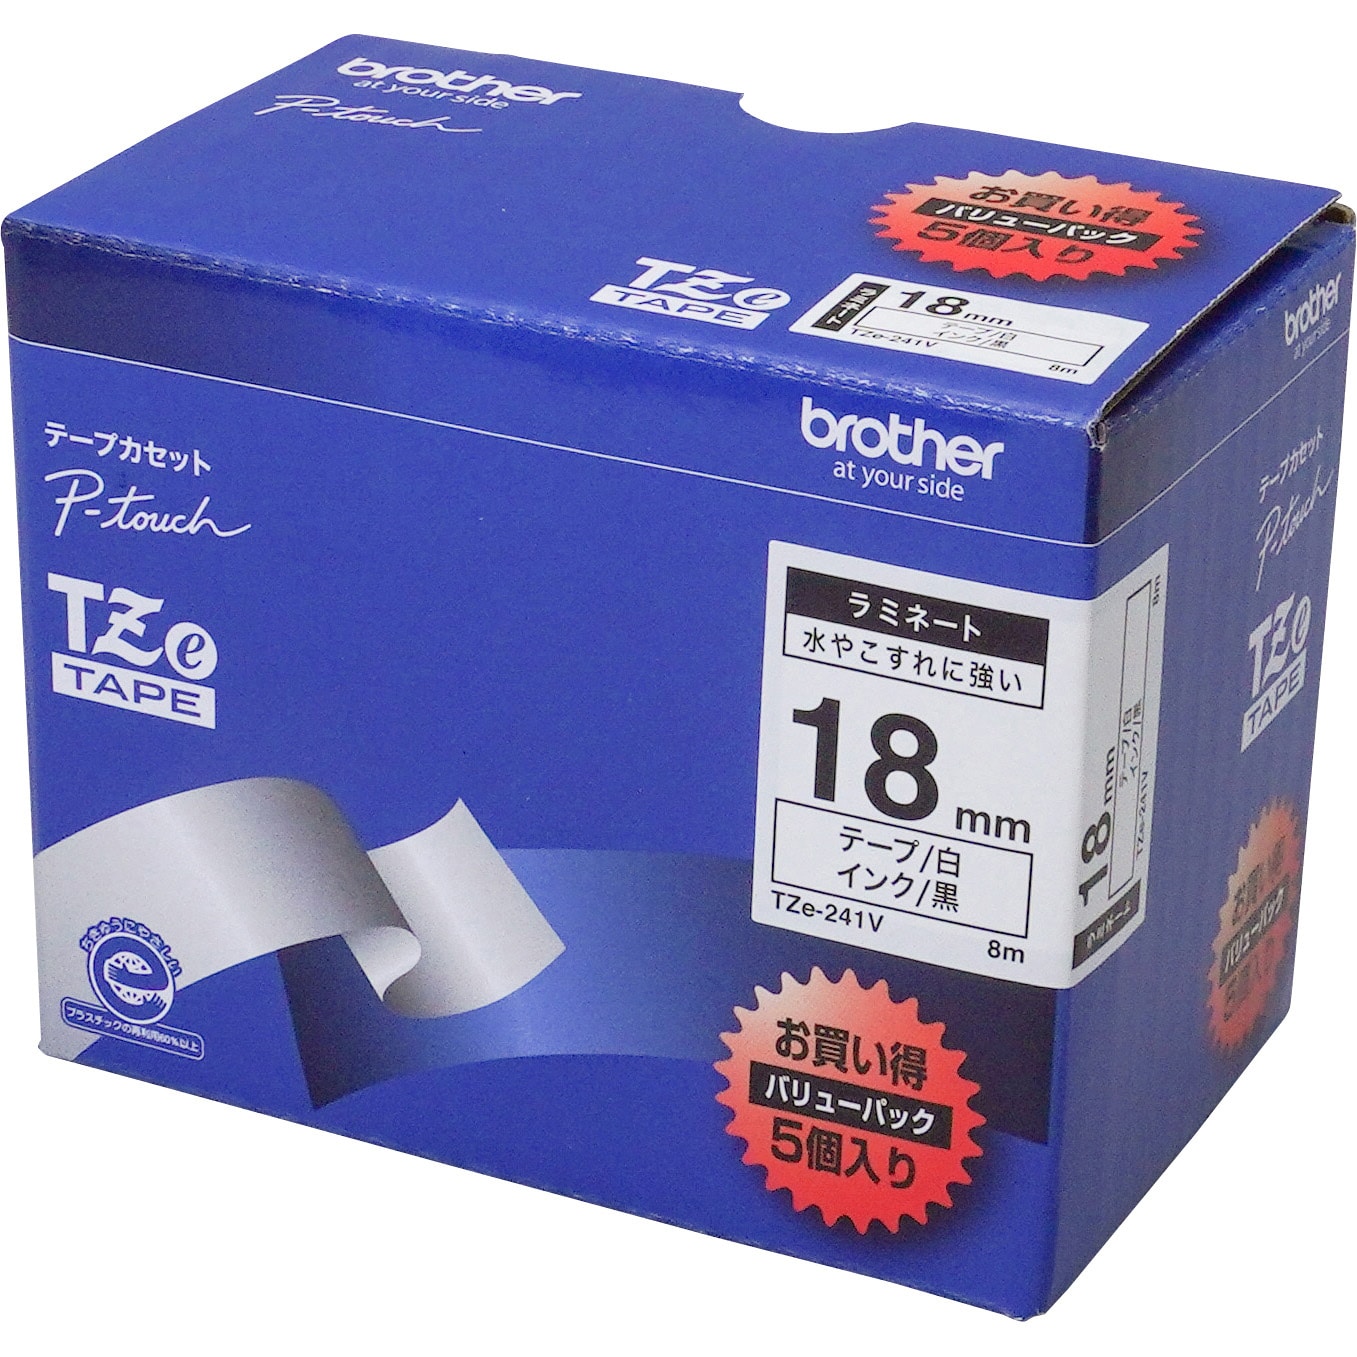 ブラザー工業 TZeテープ ラミネートテープ(透明地 黒字) 18mm TZe-141